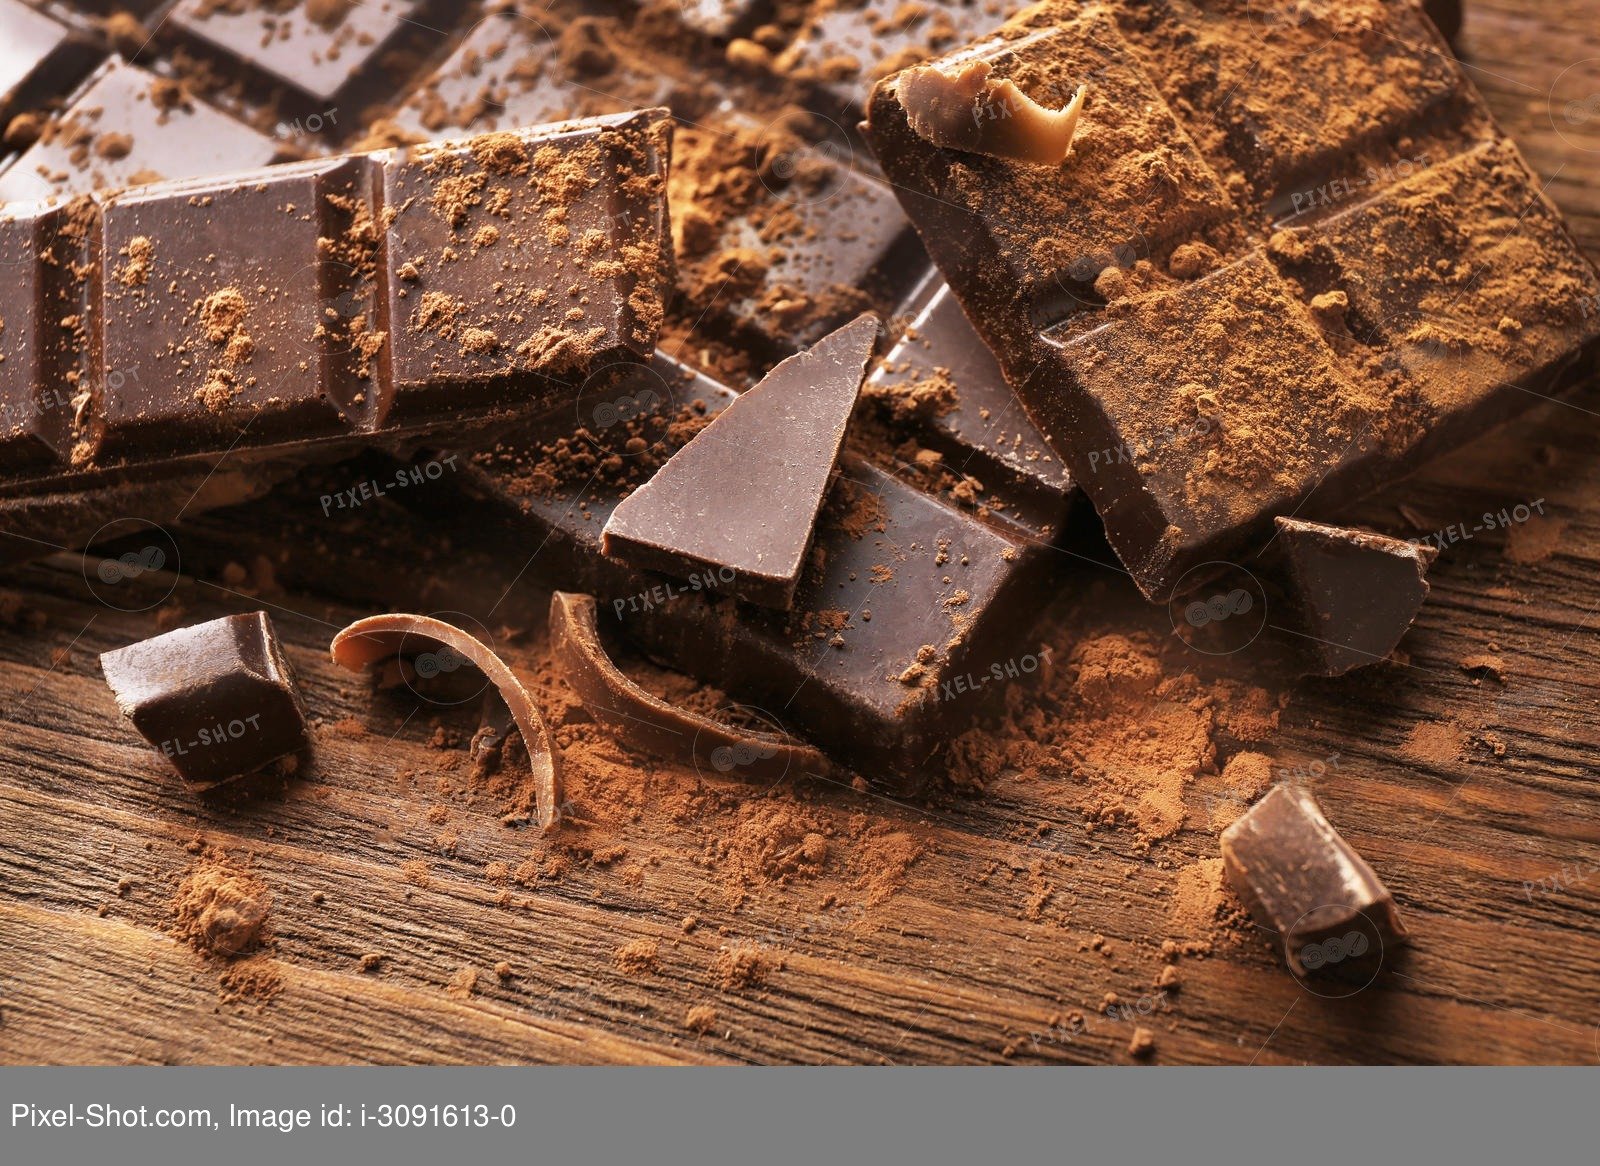 Шоколад интересное. Жировое поседение шоколада. Сахарное поседение шоколада. Кусок шоколада. Шоколад большие куски.